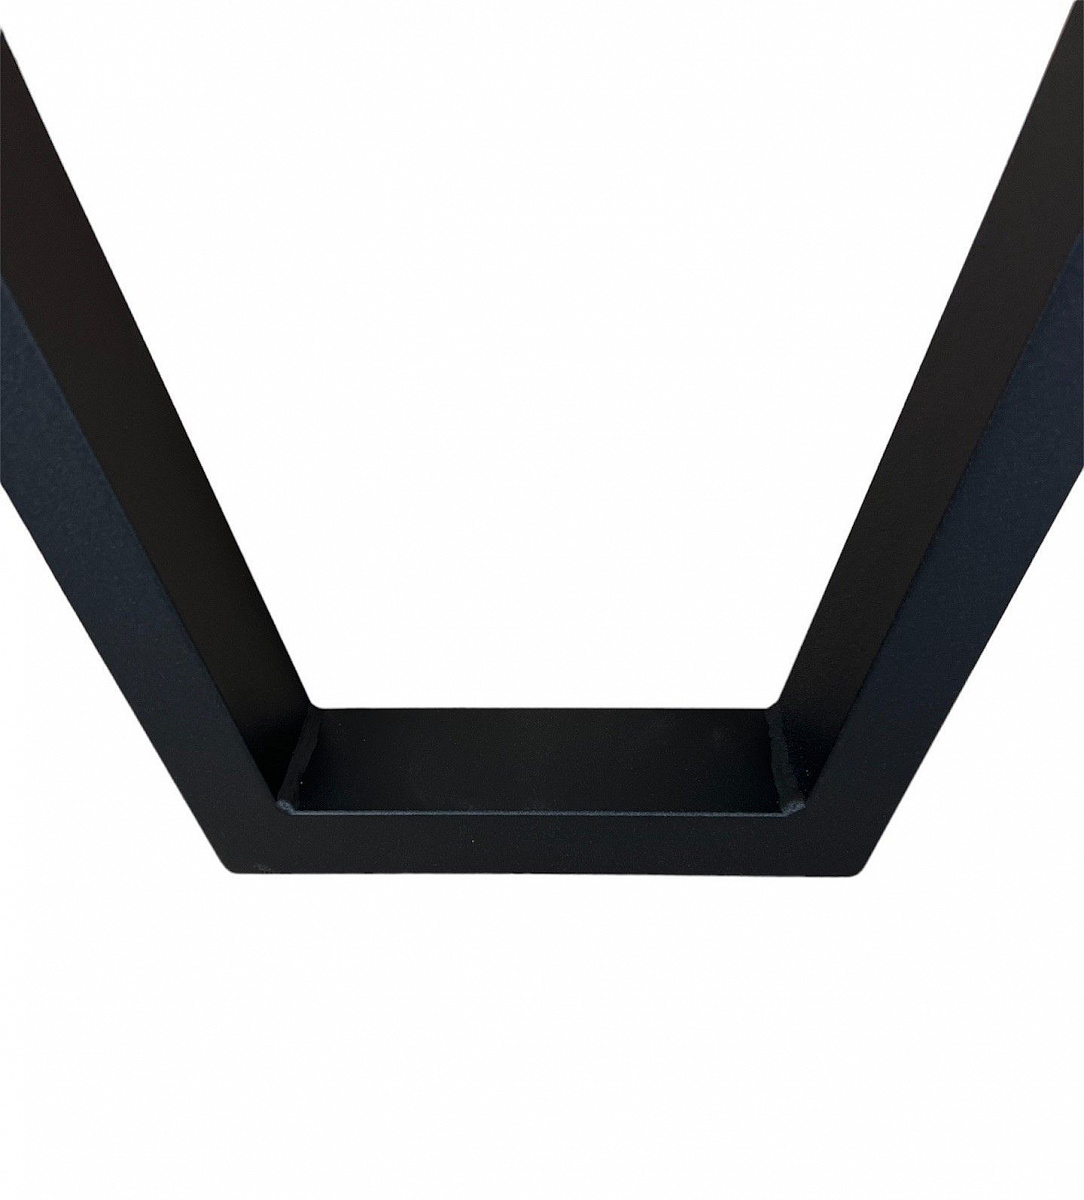 Опора для стола V-образная 81 см, черная, 2 шт